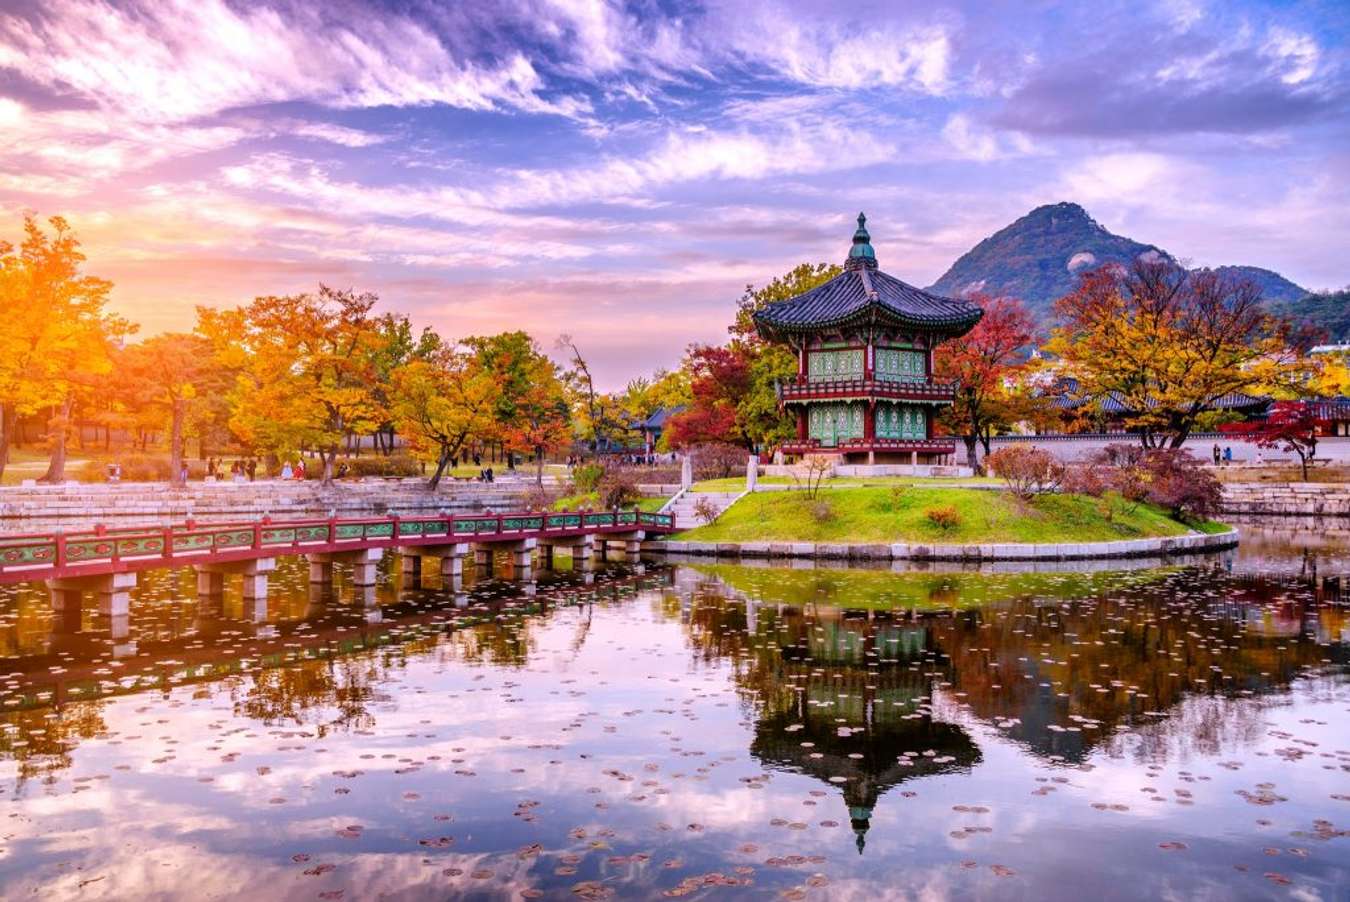 Khám phá các công viên và lăng mộ nhật bản, chùa chiền truyền thống, tận hưởng mùa hanami với những bông hoa anh đào rực rỡ. Đừng bỏ lỡ cơ hội để tận hưởng vẻ đẹp của Nhật Bản.